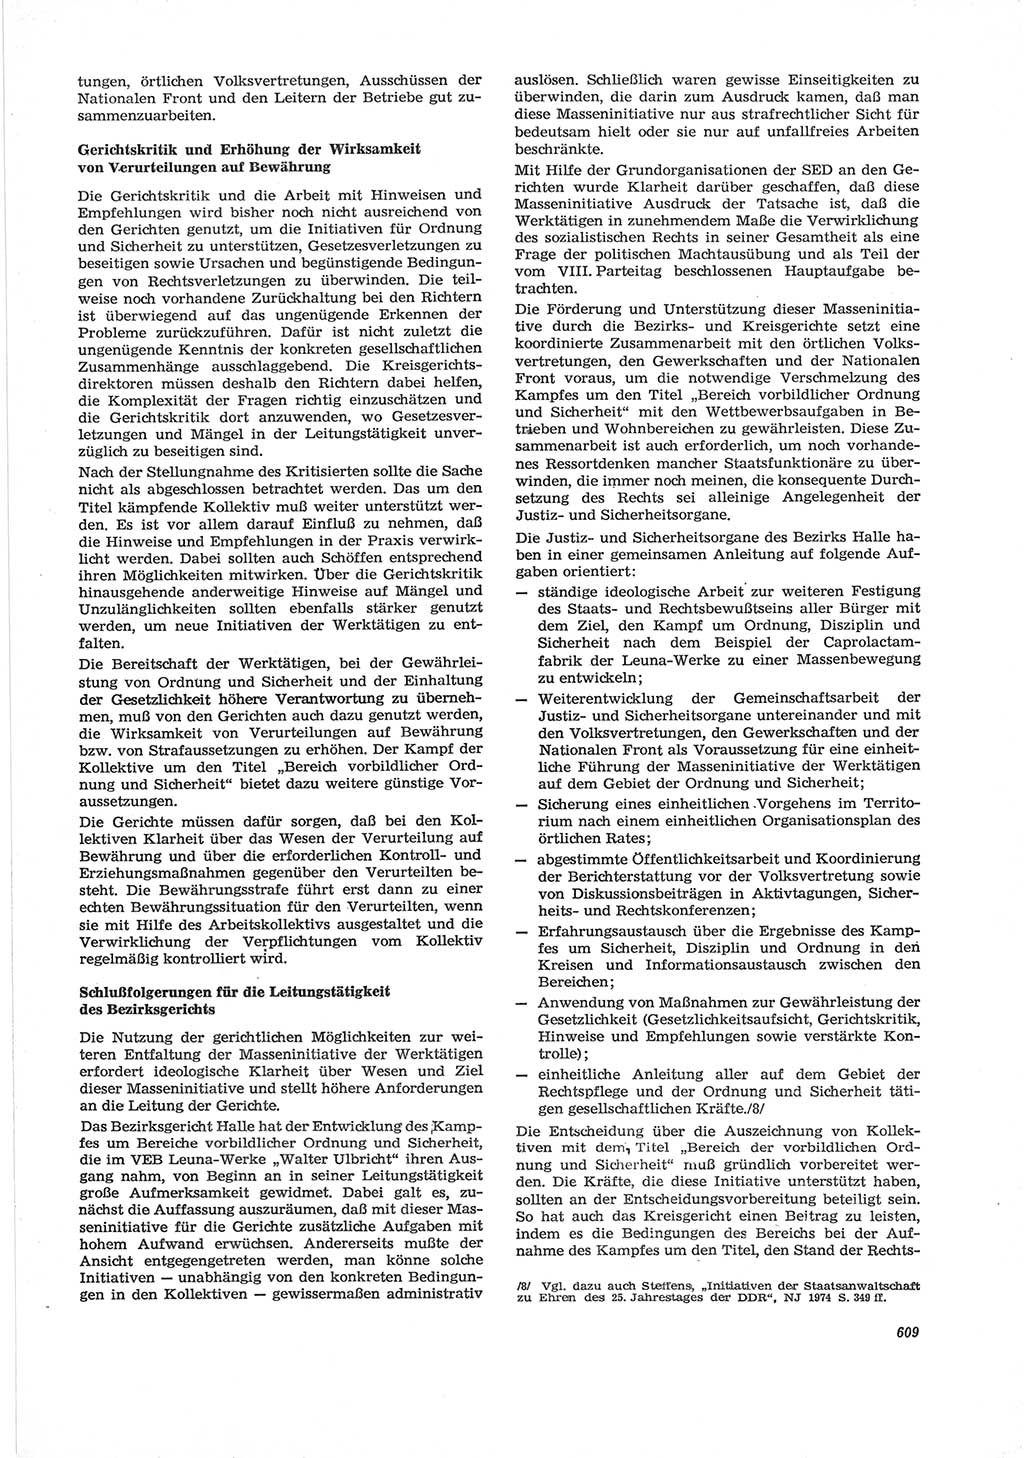 Neue Justiz (NJ), Zeitschrift für Recht und Rechtswissenschaft [Deutsche Demokratische Republik (DDR)], 28. Jahrgang 1974, Seite 609 (NJ DDR 1974, S. 609)